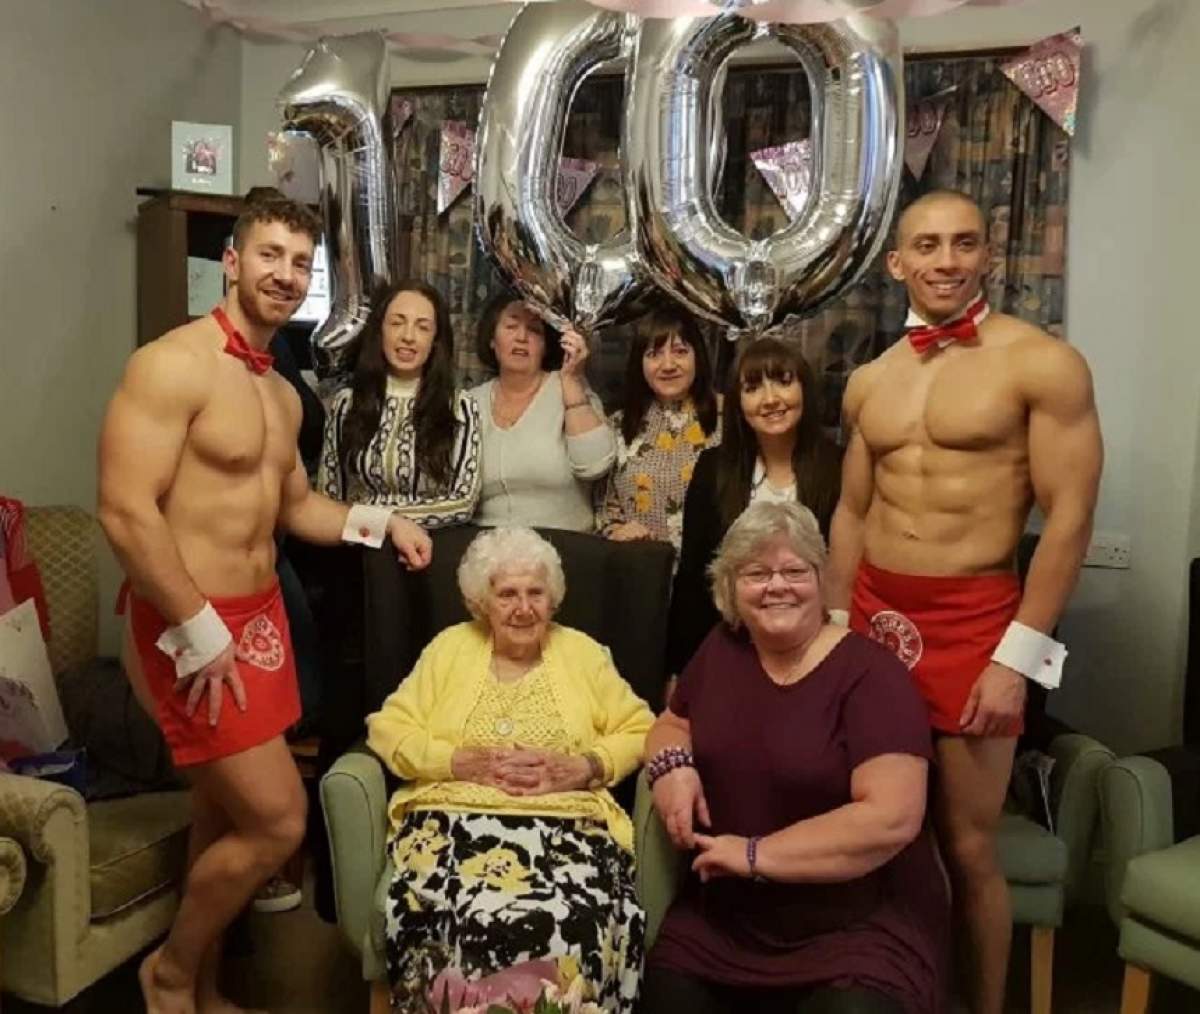 VIDEO / La 100 de ani, o bătrânică și-a petrecut ziua de naștere în compania unor stripperi. "A început să îi ciupească"